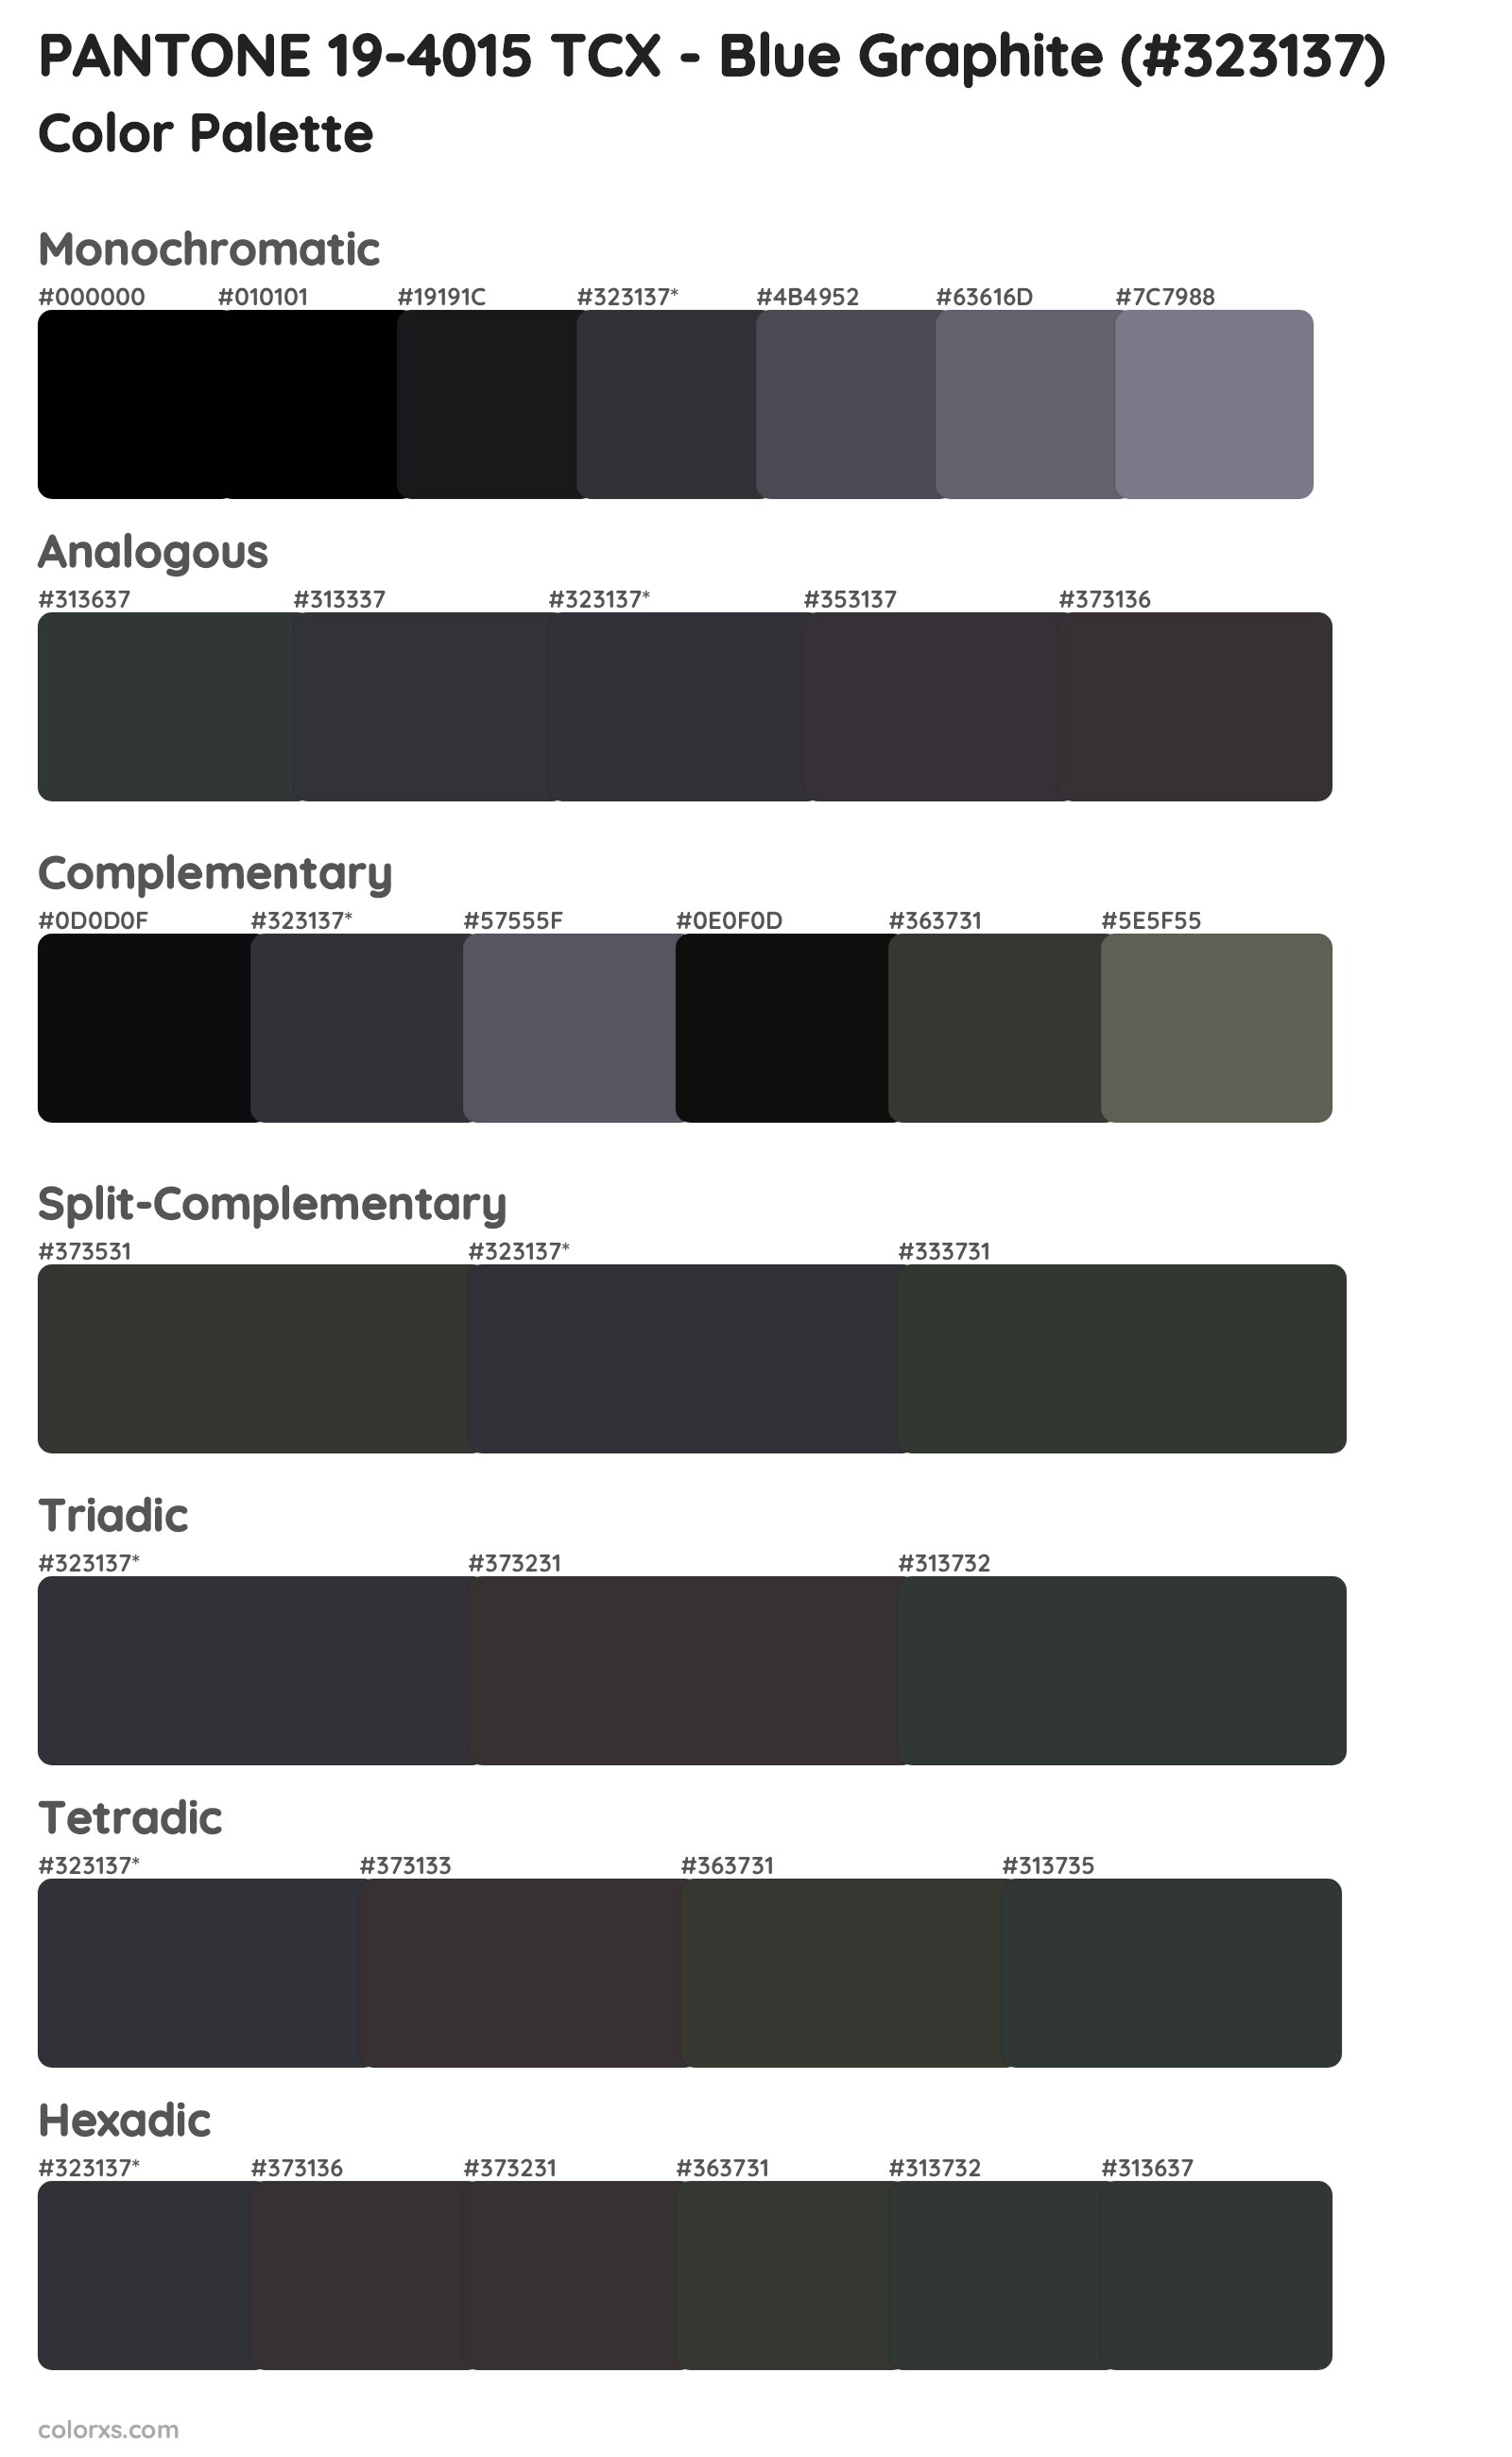 PANTONE 19-4015 TCX - Blue Graphite Color Scheme Palettes